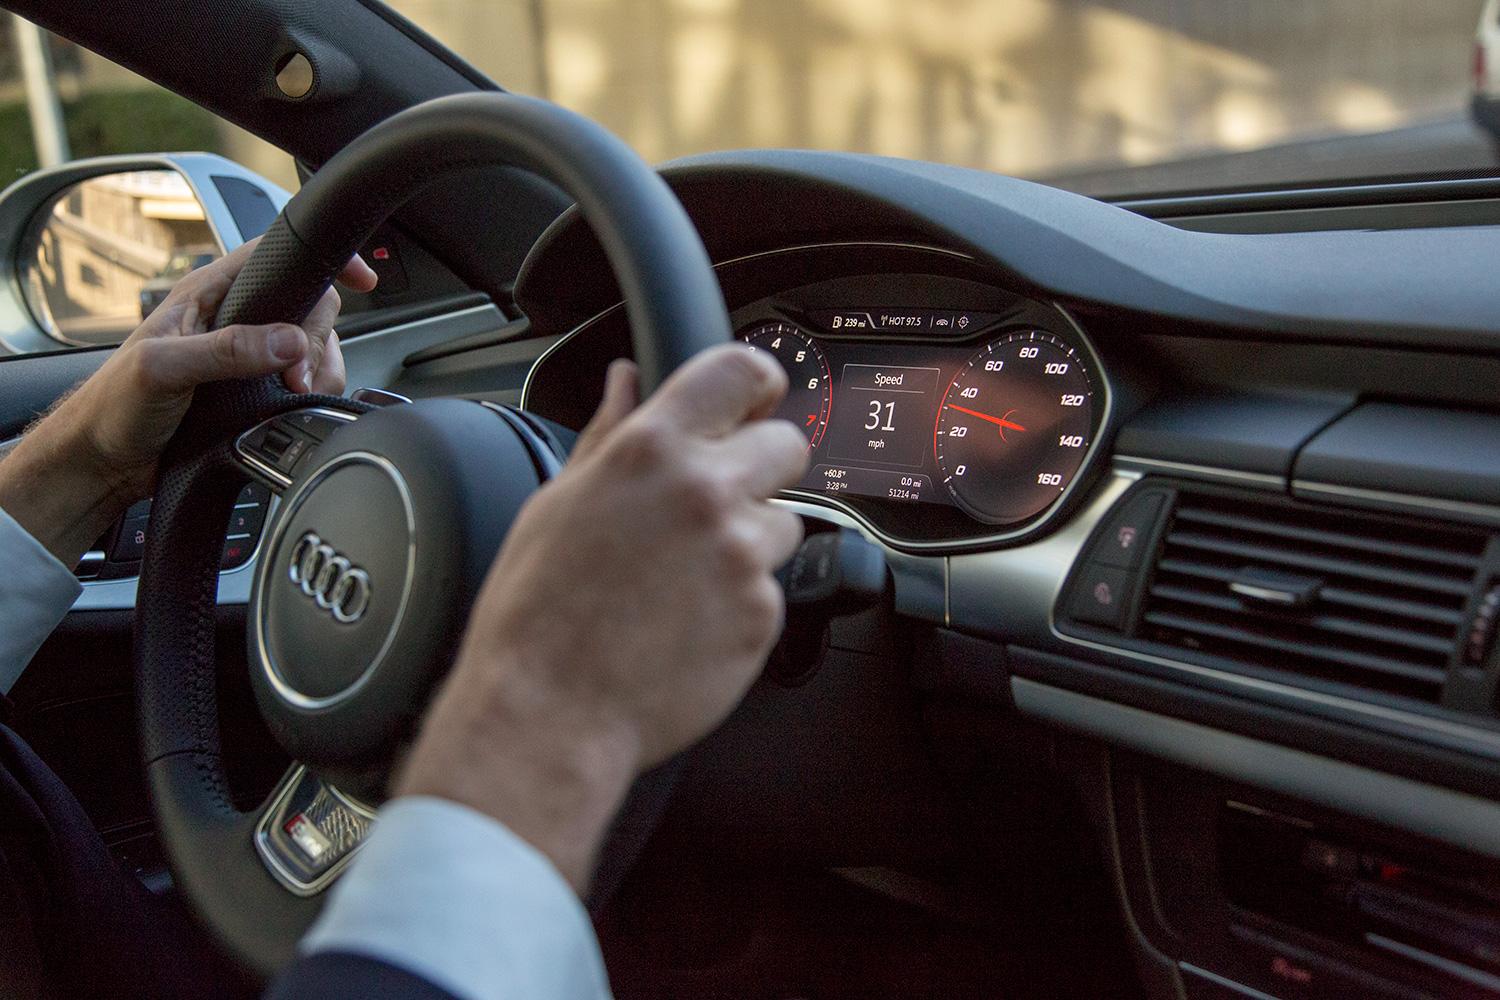 Audi A7 Autonomous driving